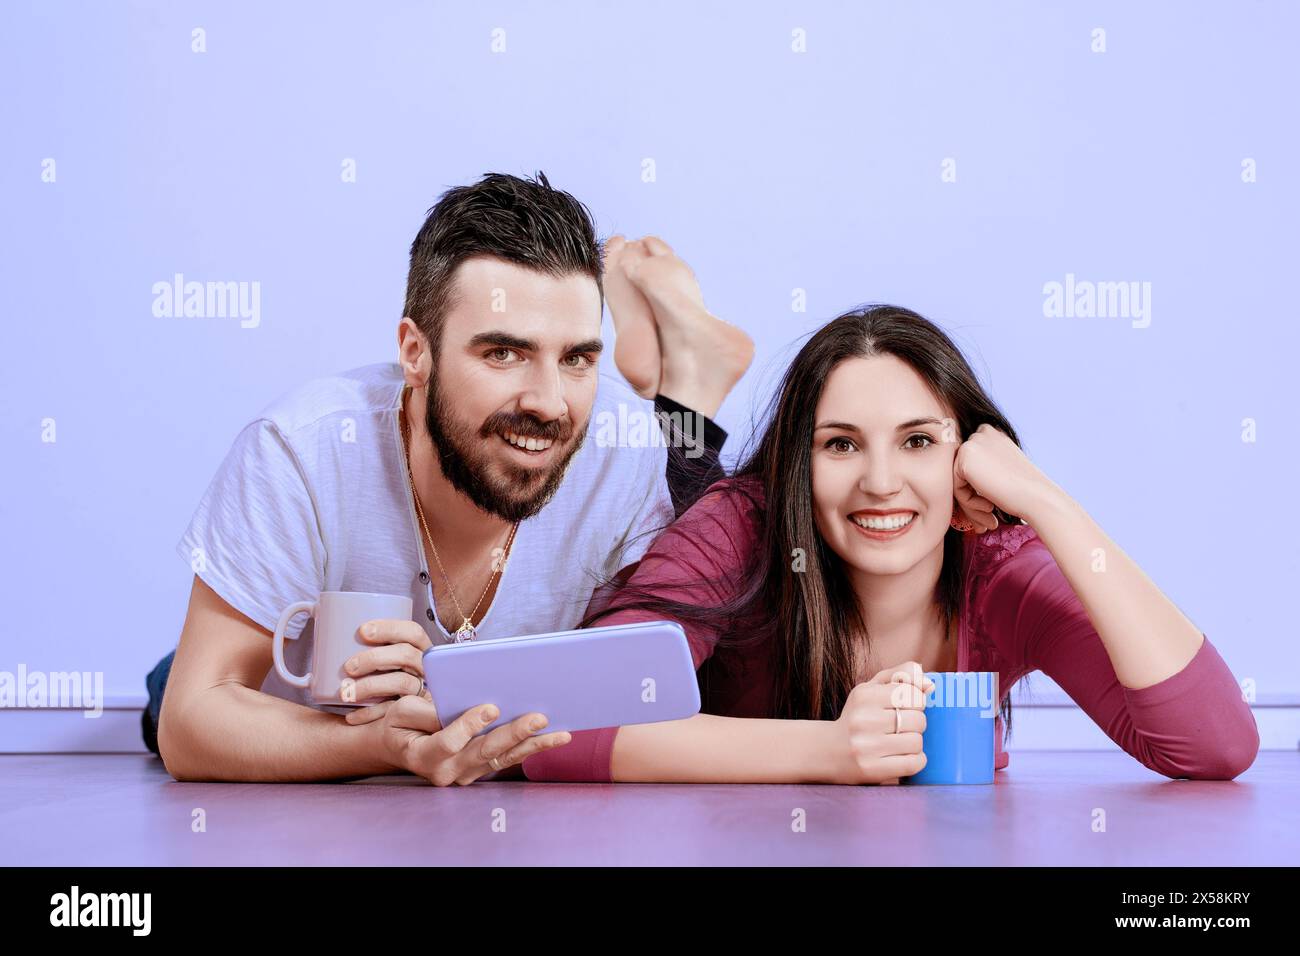 La coppia gode di un momento di relax, condividendo Risate e contenuti digitali su un tablet, la loro gioia e compagnia sono evidenti Foto Stock